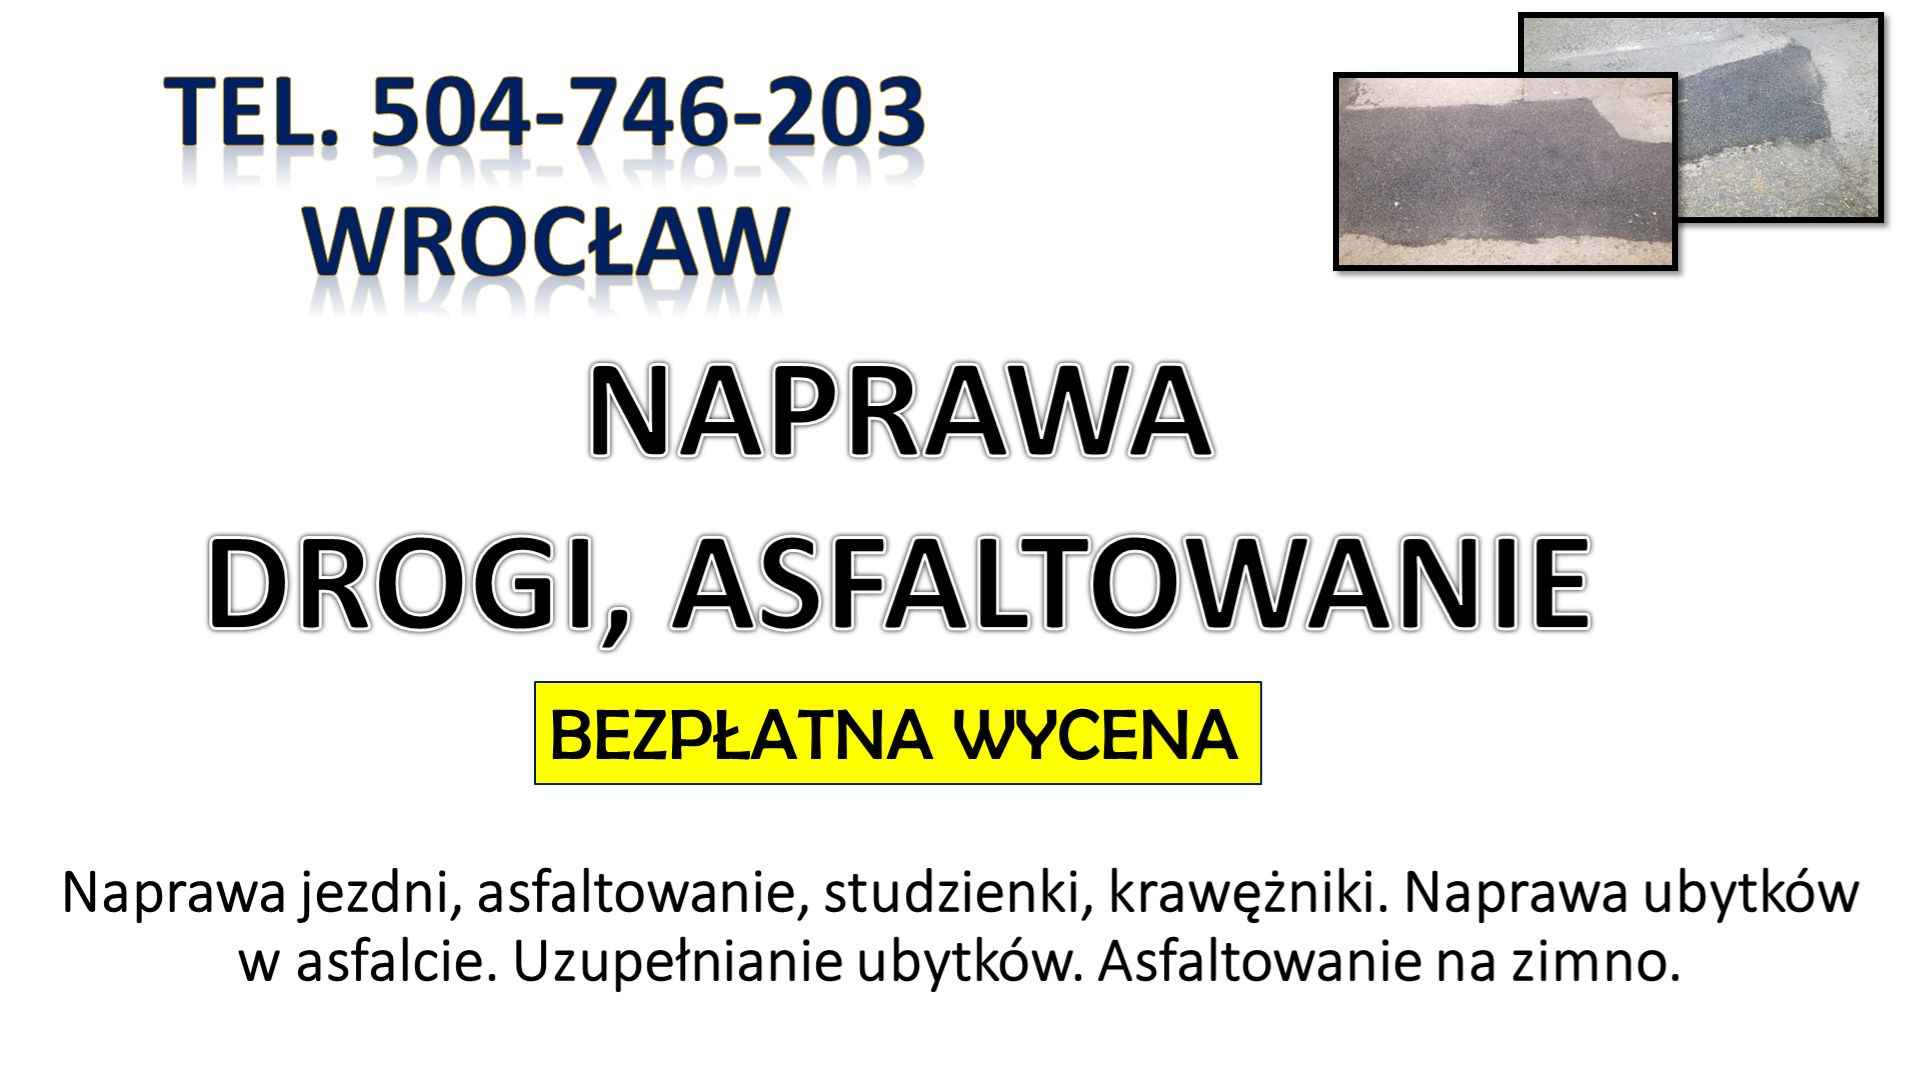 Asflaltowanie, t. 504-746-203, Wrocław, Łódź, Opole, układanie asfaltu Psie Pole - zdjęcie 10